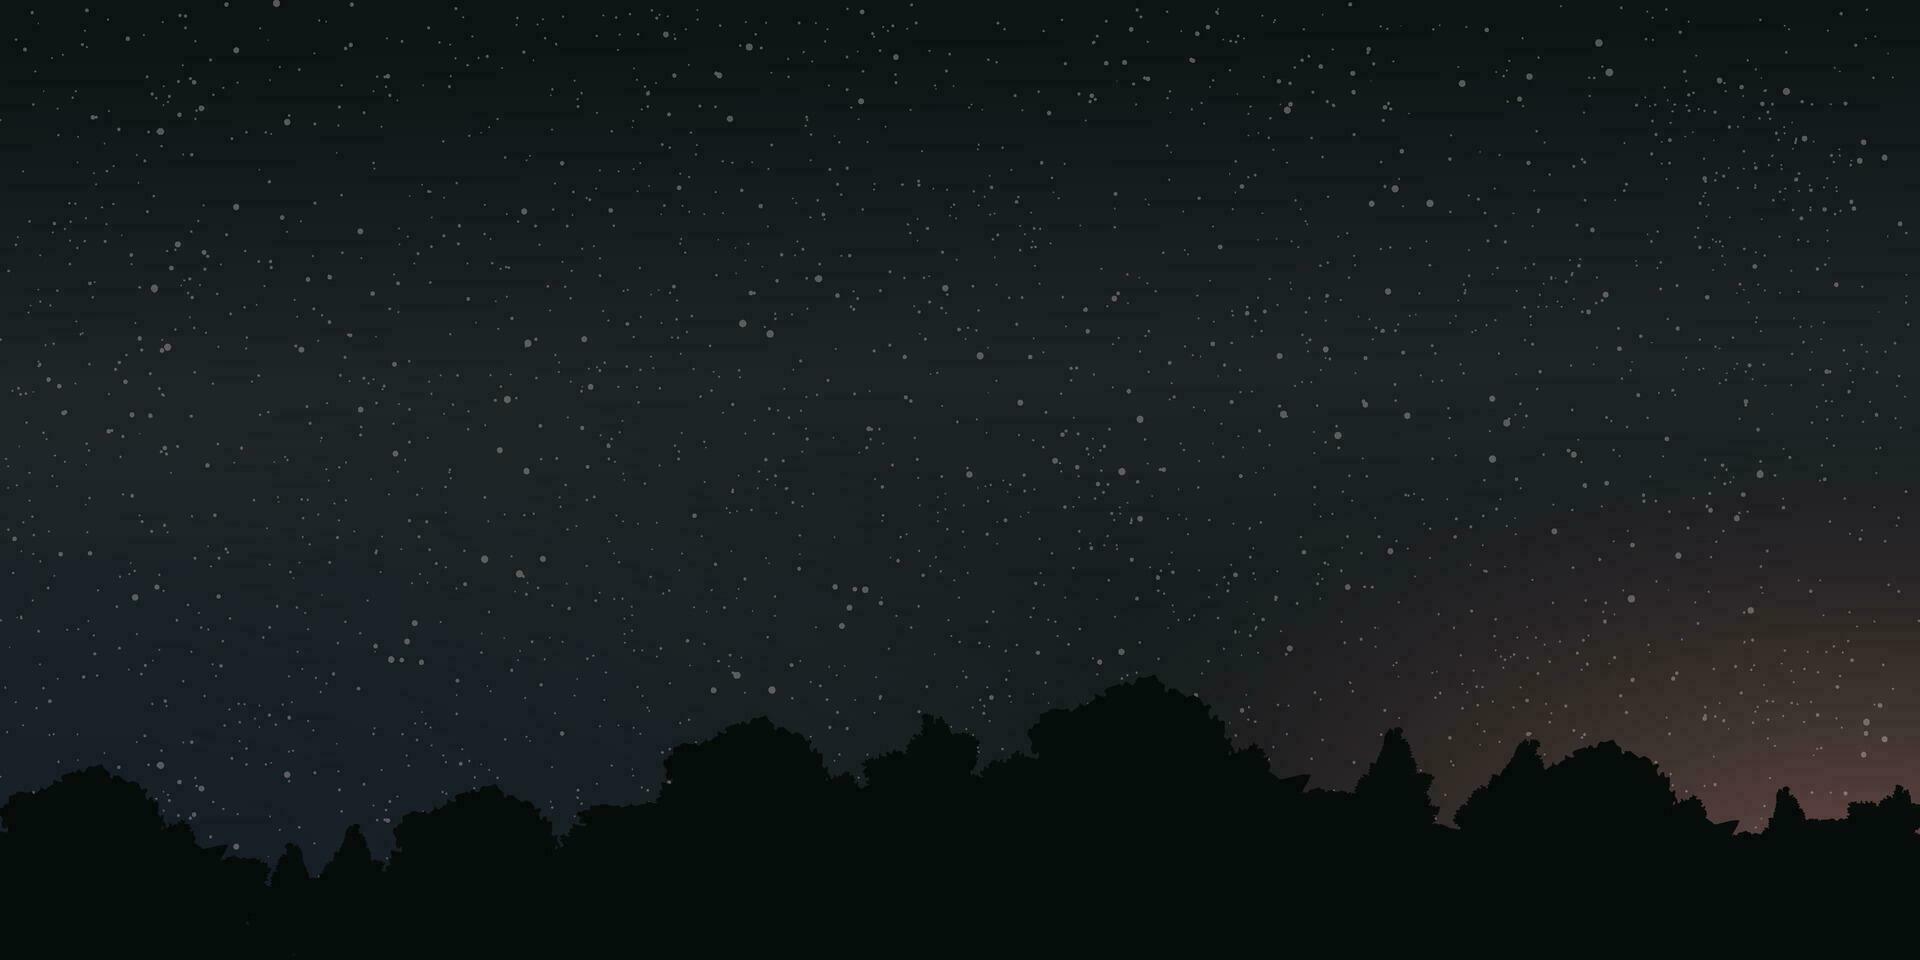 noche cielo con un lote de estrella antecedentes tener silueta bosque primer plano vector ilustración.